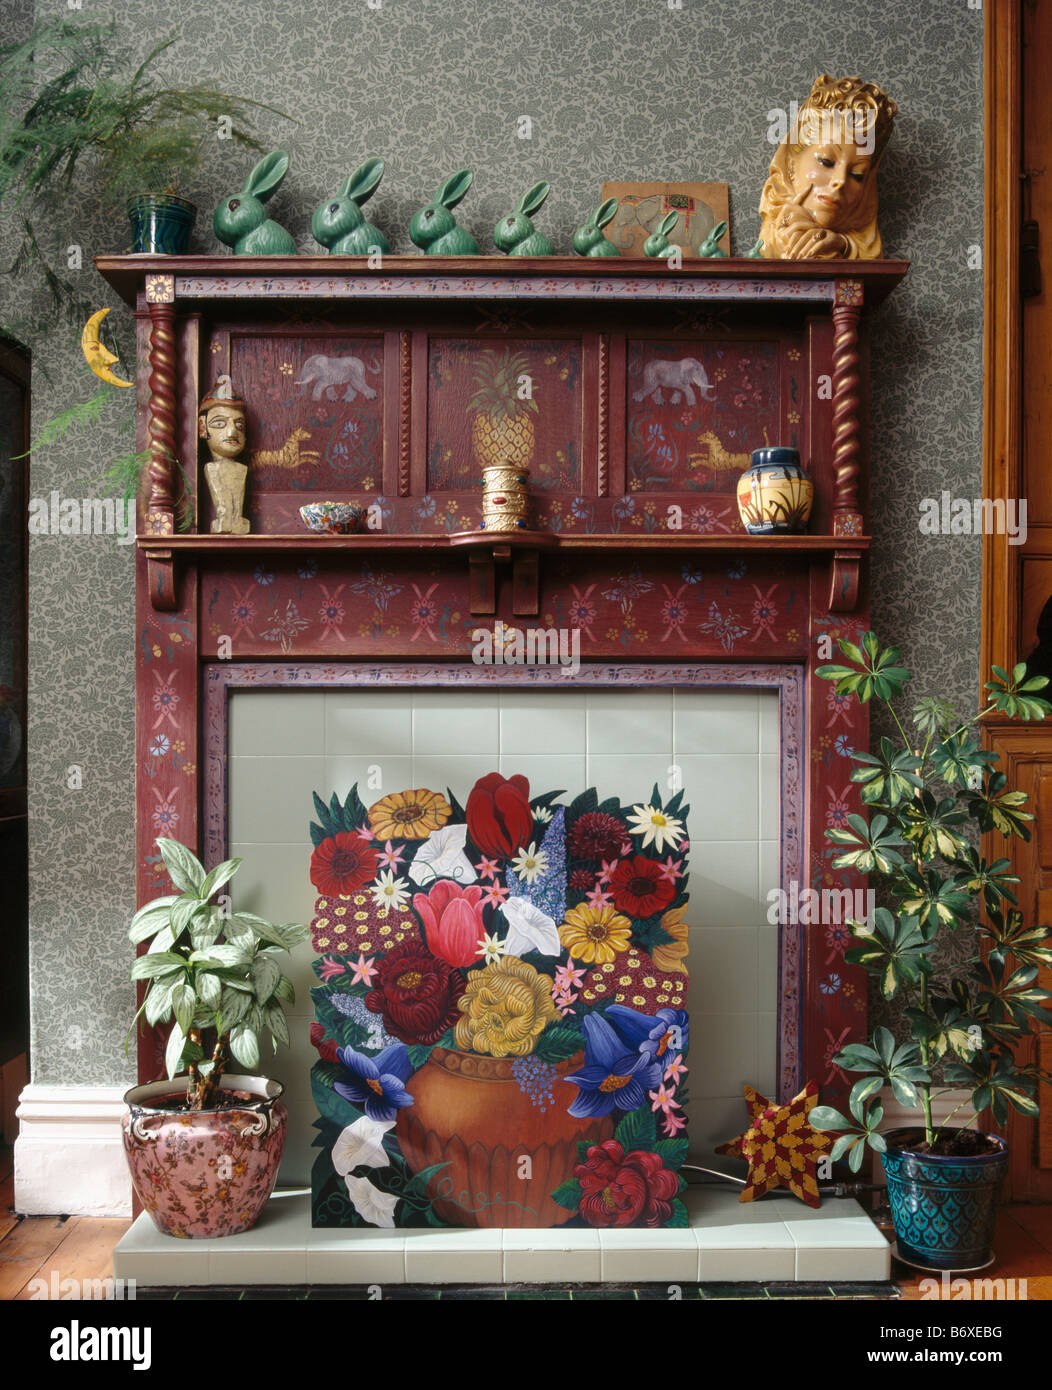 Houseplants e dipinto di floral fire-schermo nella parte anteriore del dipinto di trenta camino con raccolta di verde Denby conigli Foto Stock